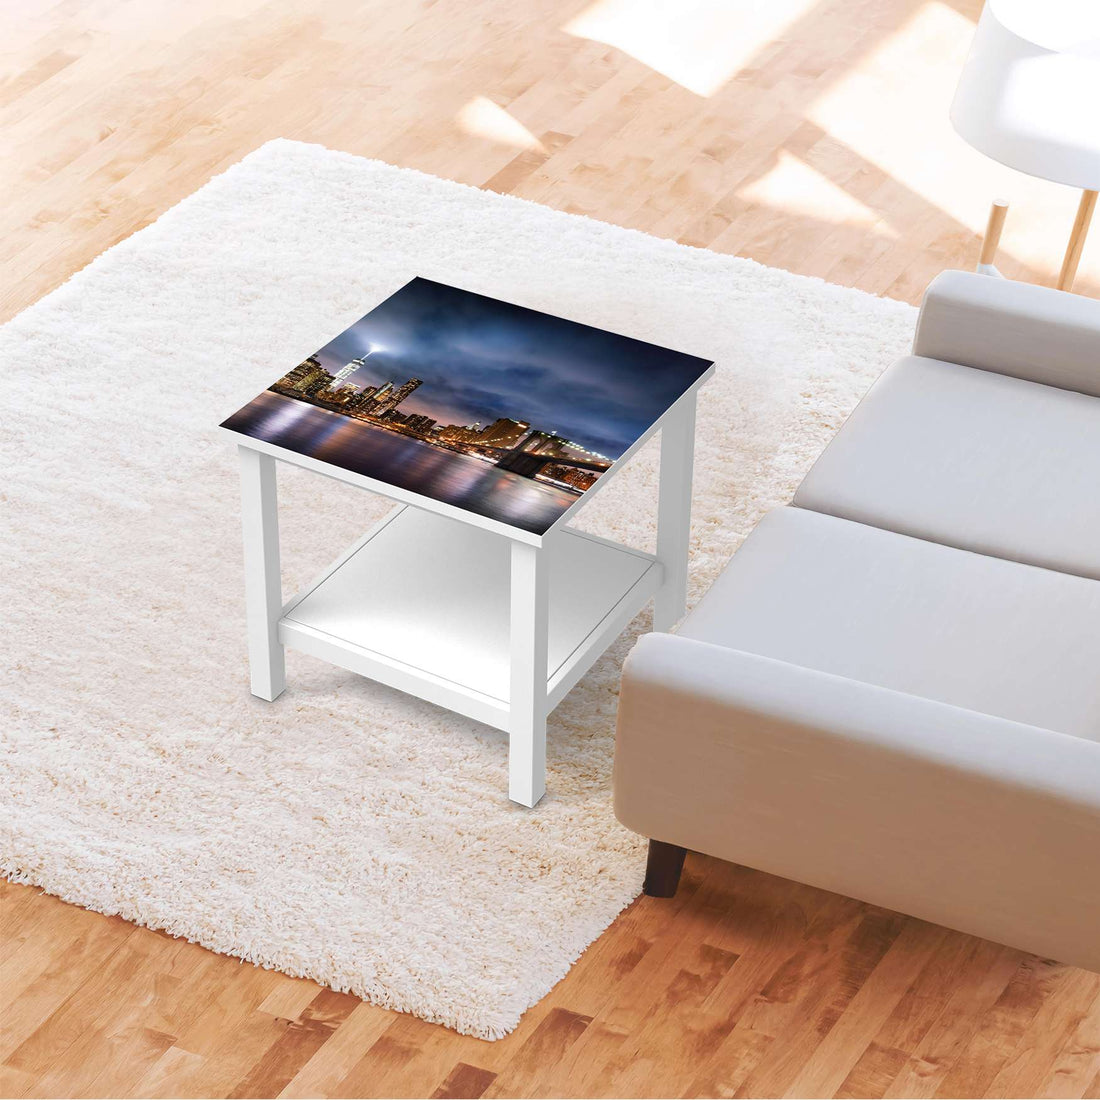 Möbel Klebefolie Brooklyn Bridge - IKEA Hemnes Beistelltisch 55x55 cm - Wohnzimmer